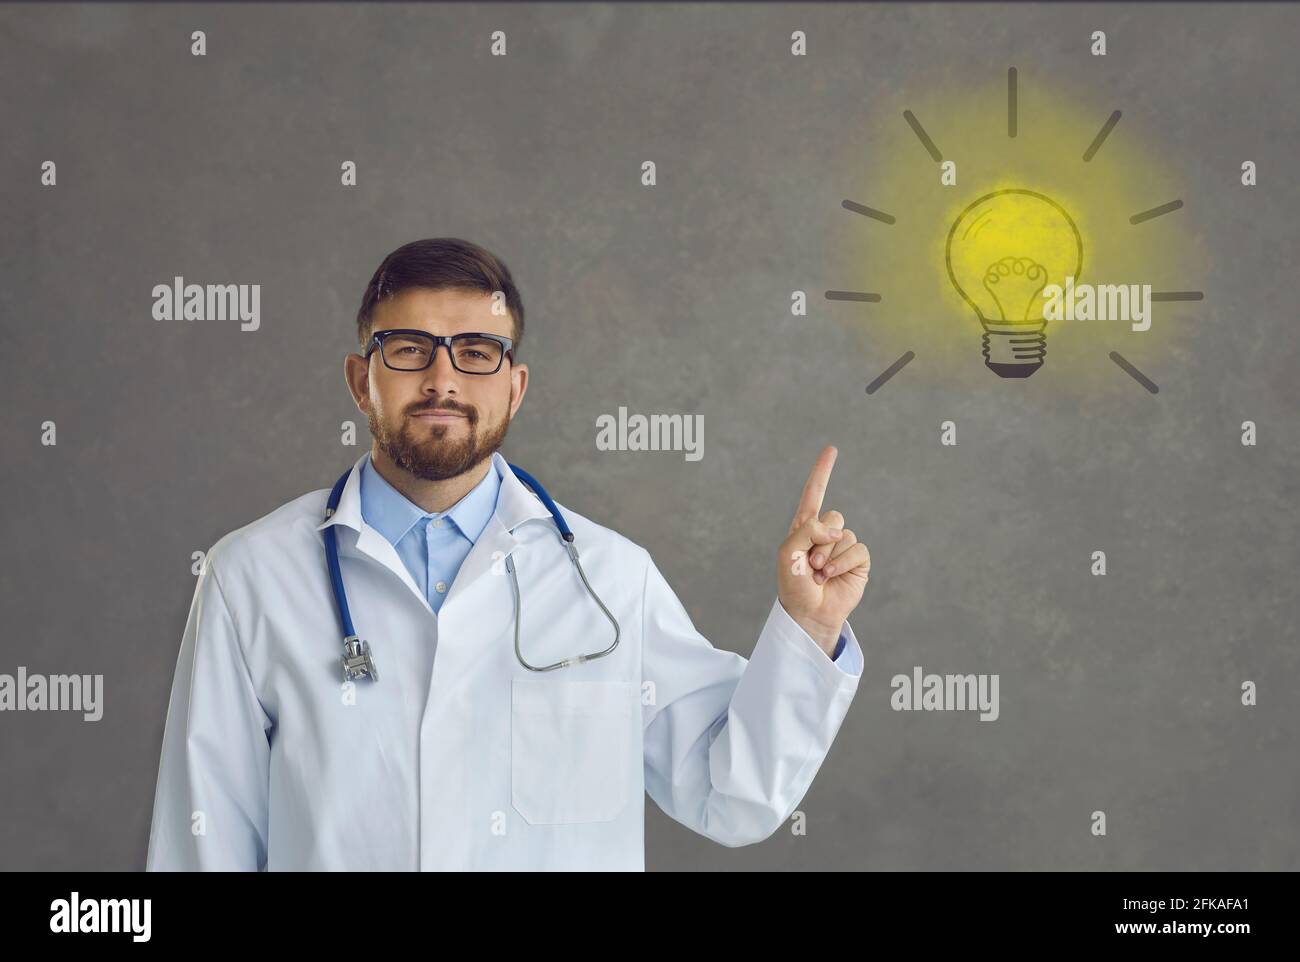 Ritratto di un medico orgoglioso che indica la lampadina come simbolo di idee e soluzioni innovative Foto Stock